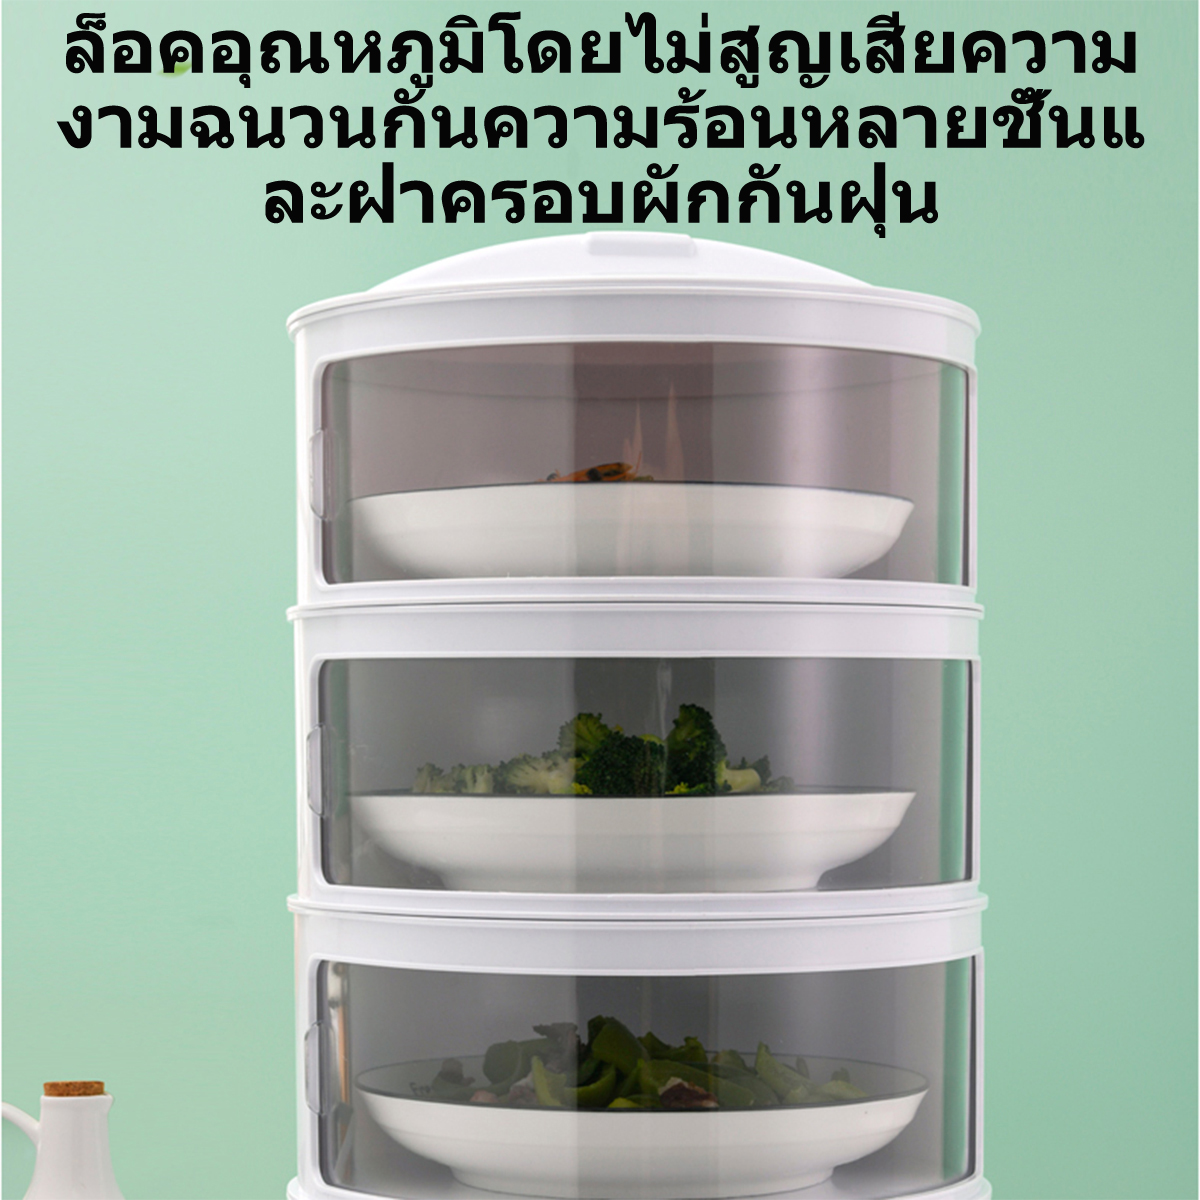 AOQU กล่องเก็บอาหาร 5 ชั้น 4 ชั้น 3 ชั้น ชั้นเก็บอาหาร ป้องกันแมลงบิน ถนอมอาหาร ด้านข้างดึงเปิดกล่องฉนวนเก็บอาหาร food storage box